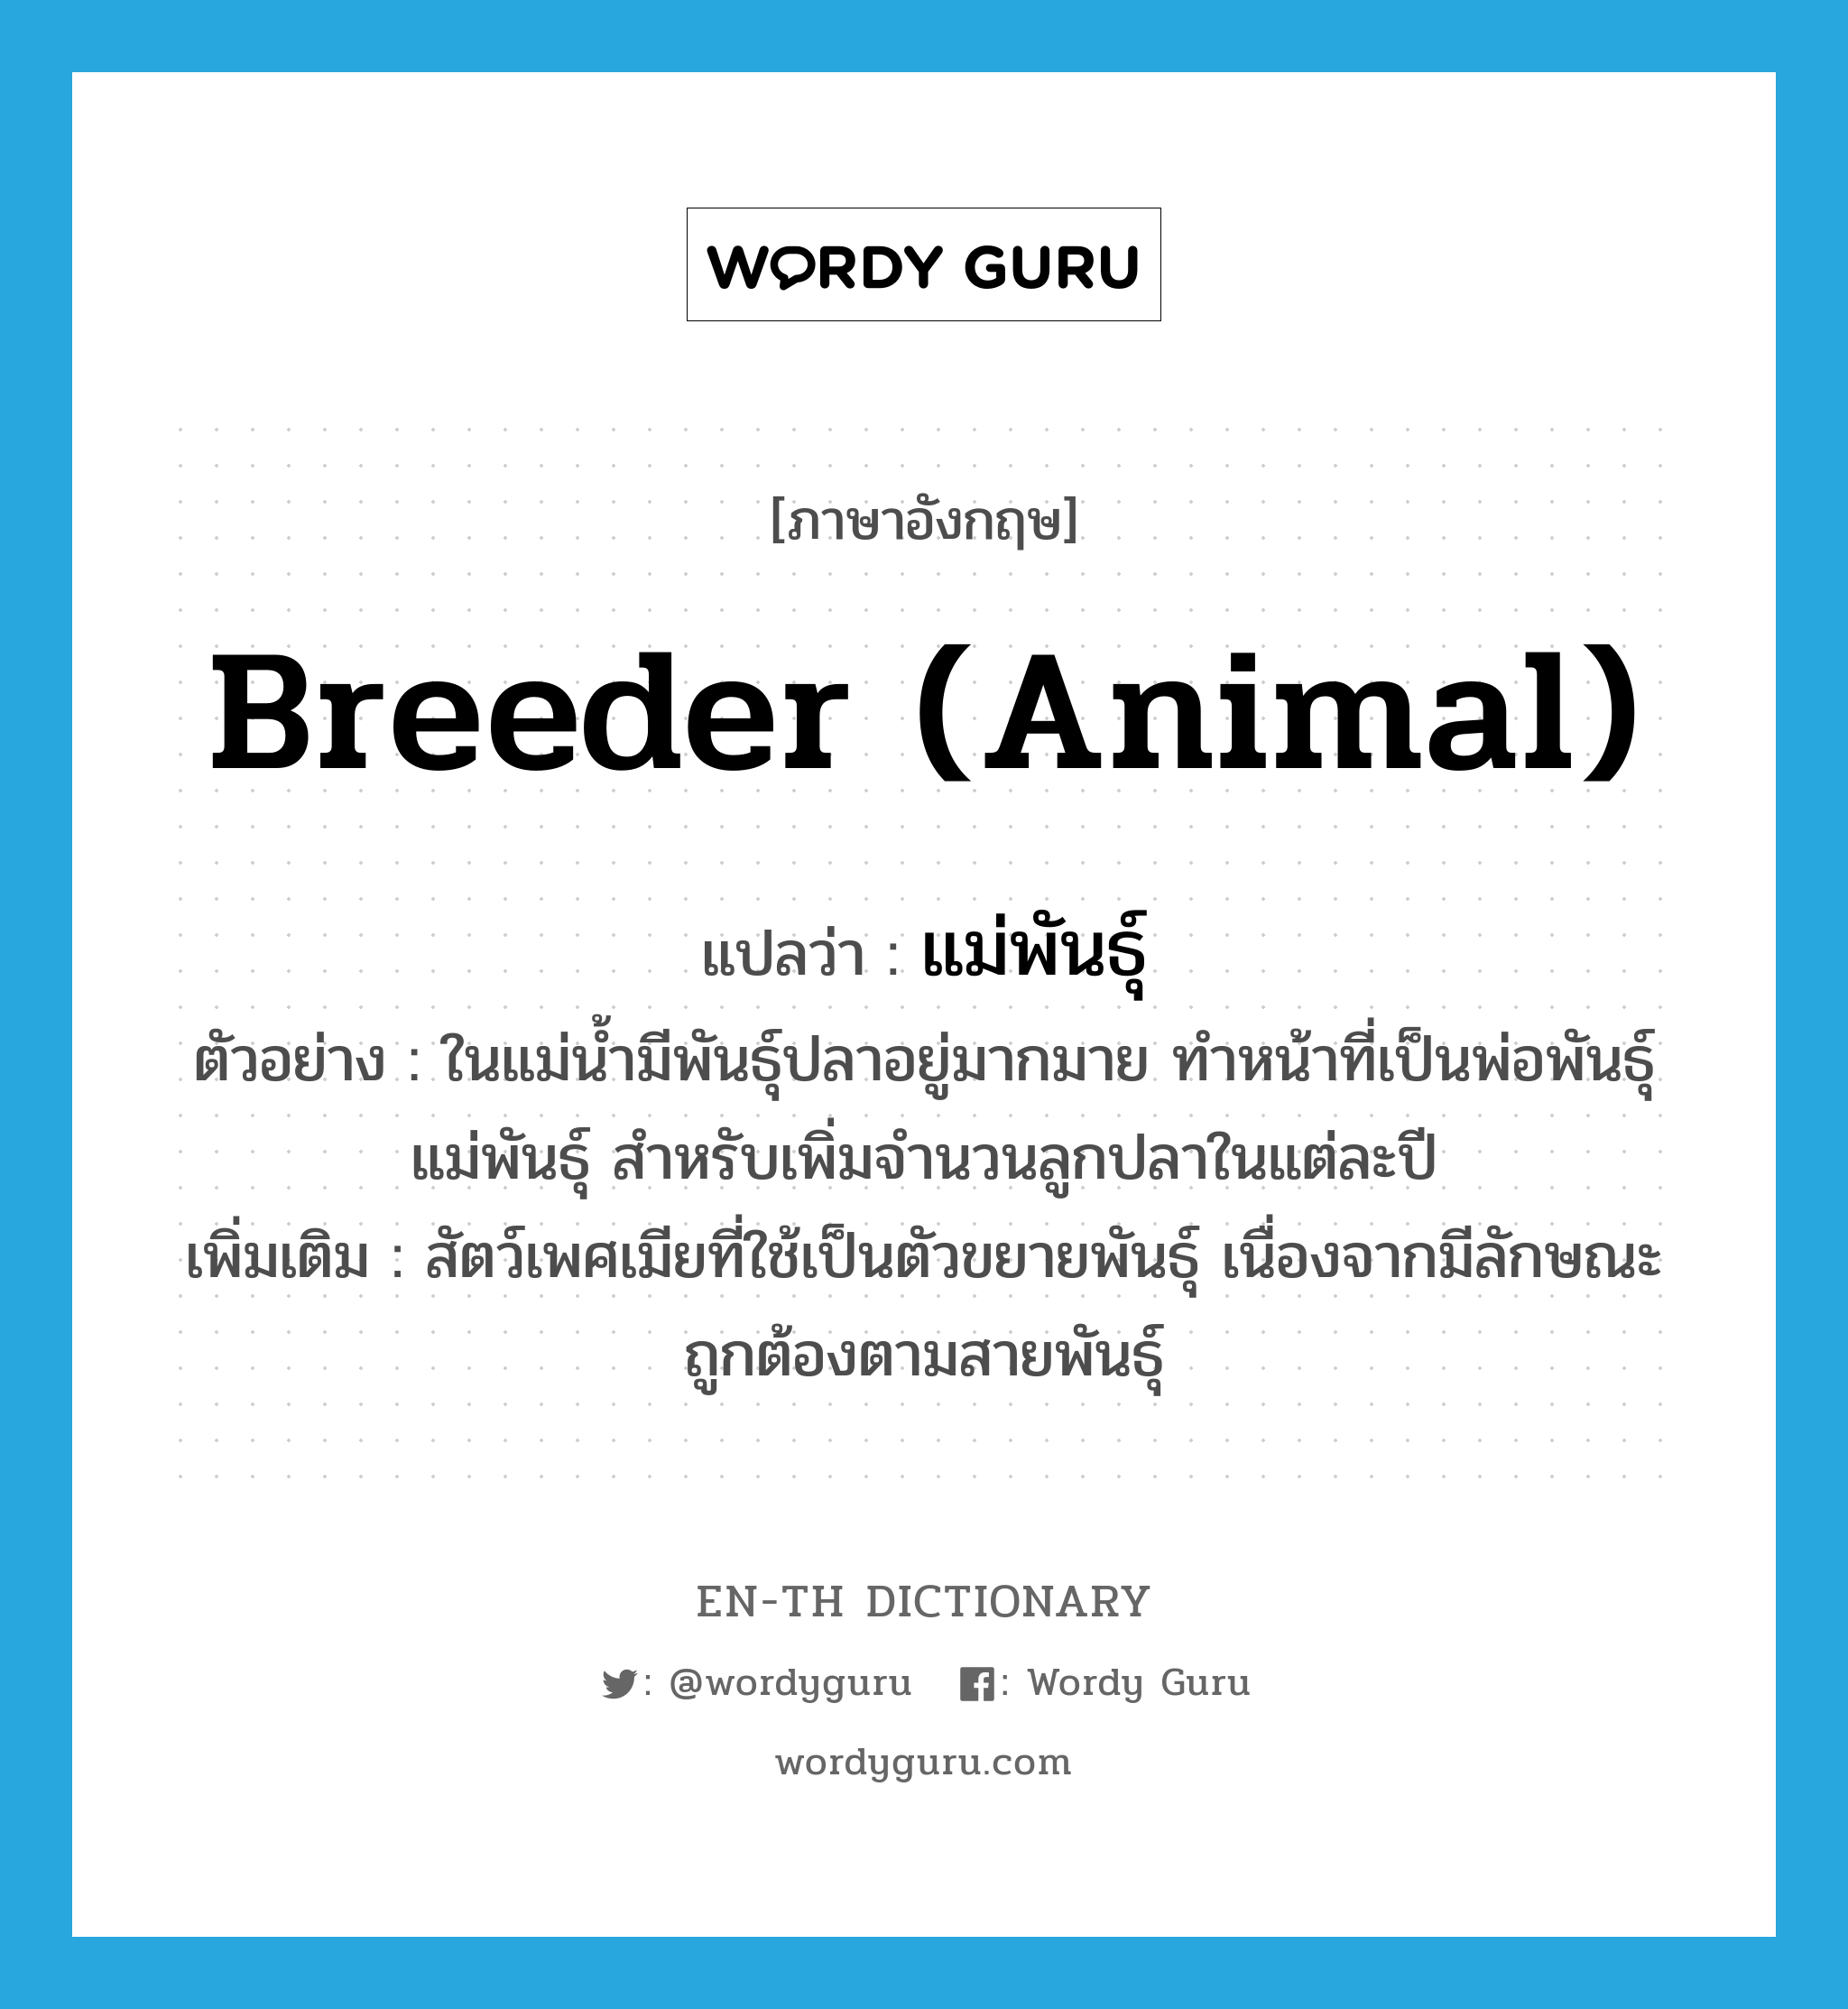 breeder (animal) แปลว่า?, คำศัพท์ภาษาอังกฤษ breeder (animal) แปลว่า แม่พันธุ์ ประเภท N ตัวอย่าง ในแม่น้ำมีพันธุ์ปลาอยู่มากมาย ทำหน้าที่เป็นพ่อพันธุ์แม่พันธุ์ สำหรับเพิ่มจำนวนลูกปลาในแต่ละปี เพิ่มเติม สัตว์เพศเมียที่ใช้เป็นตัวขยายพันธุ์ เนื่องจากมีลักษณะถูกต้องตามสายพันธุ์ หมวด N